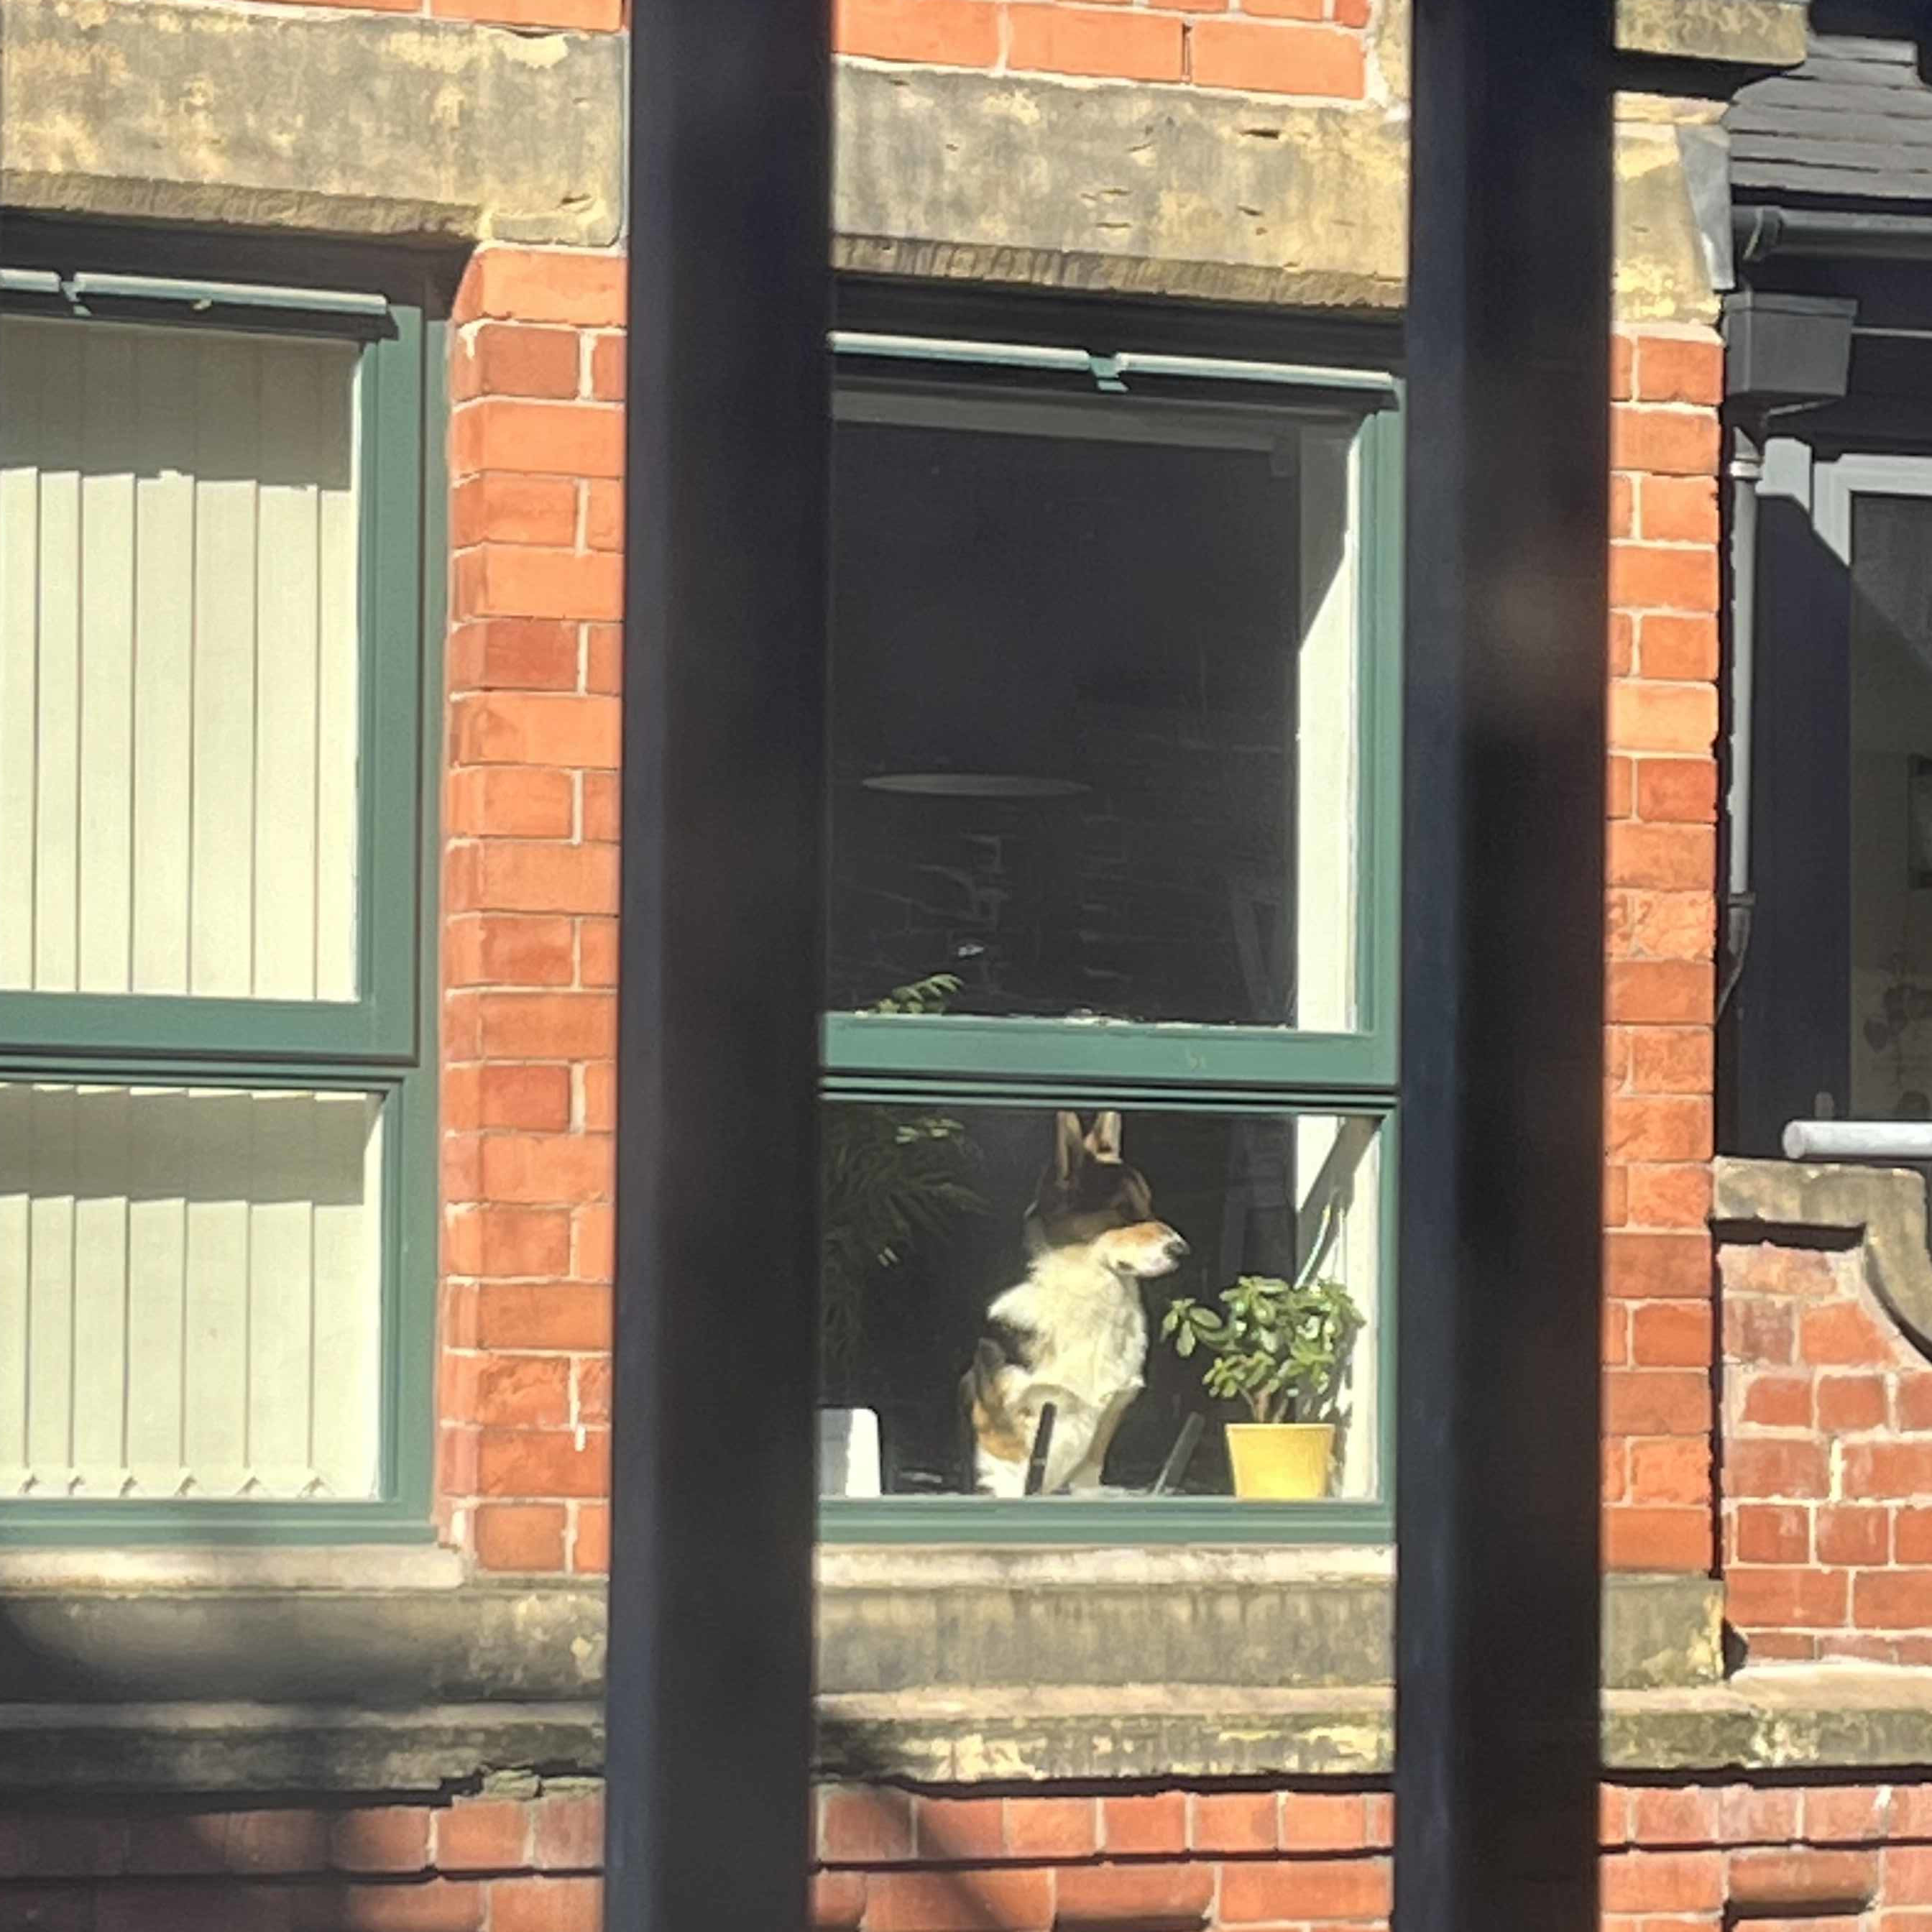 A cute dog in a window